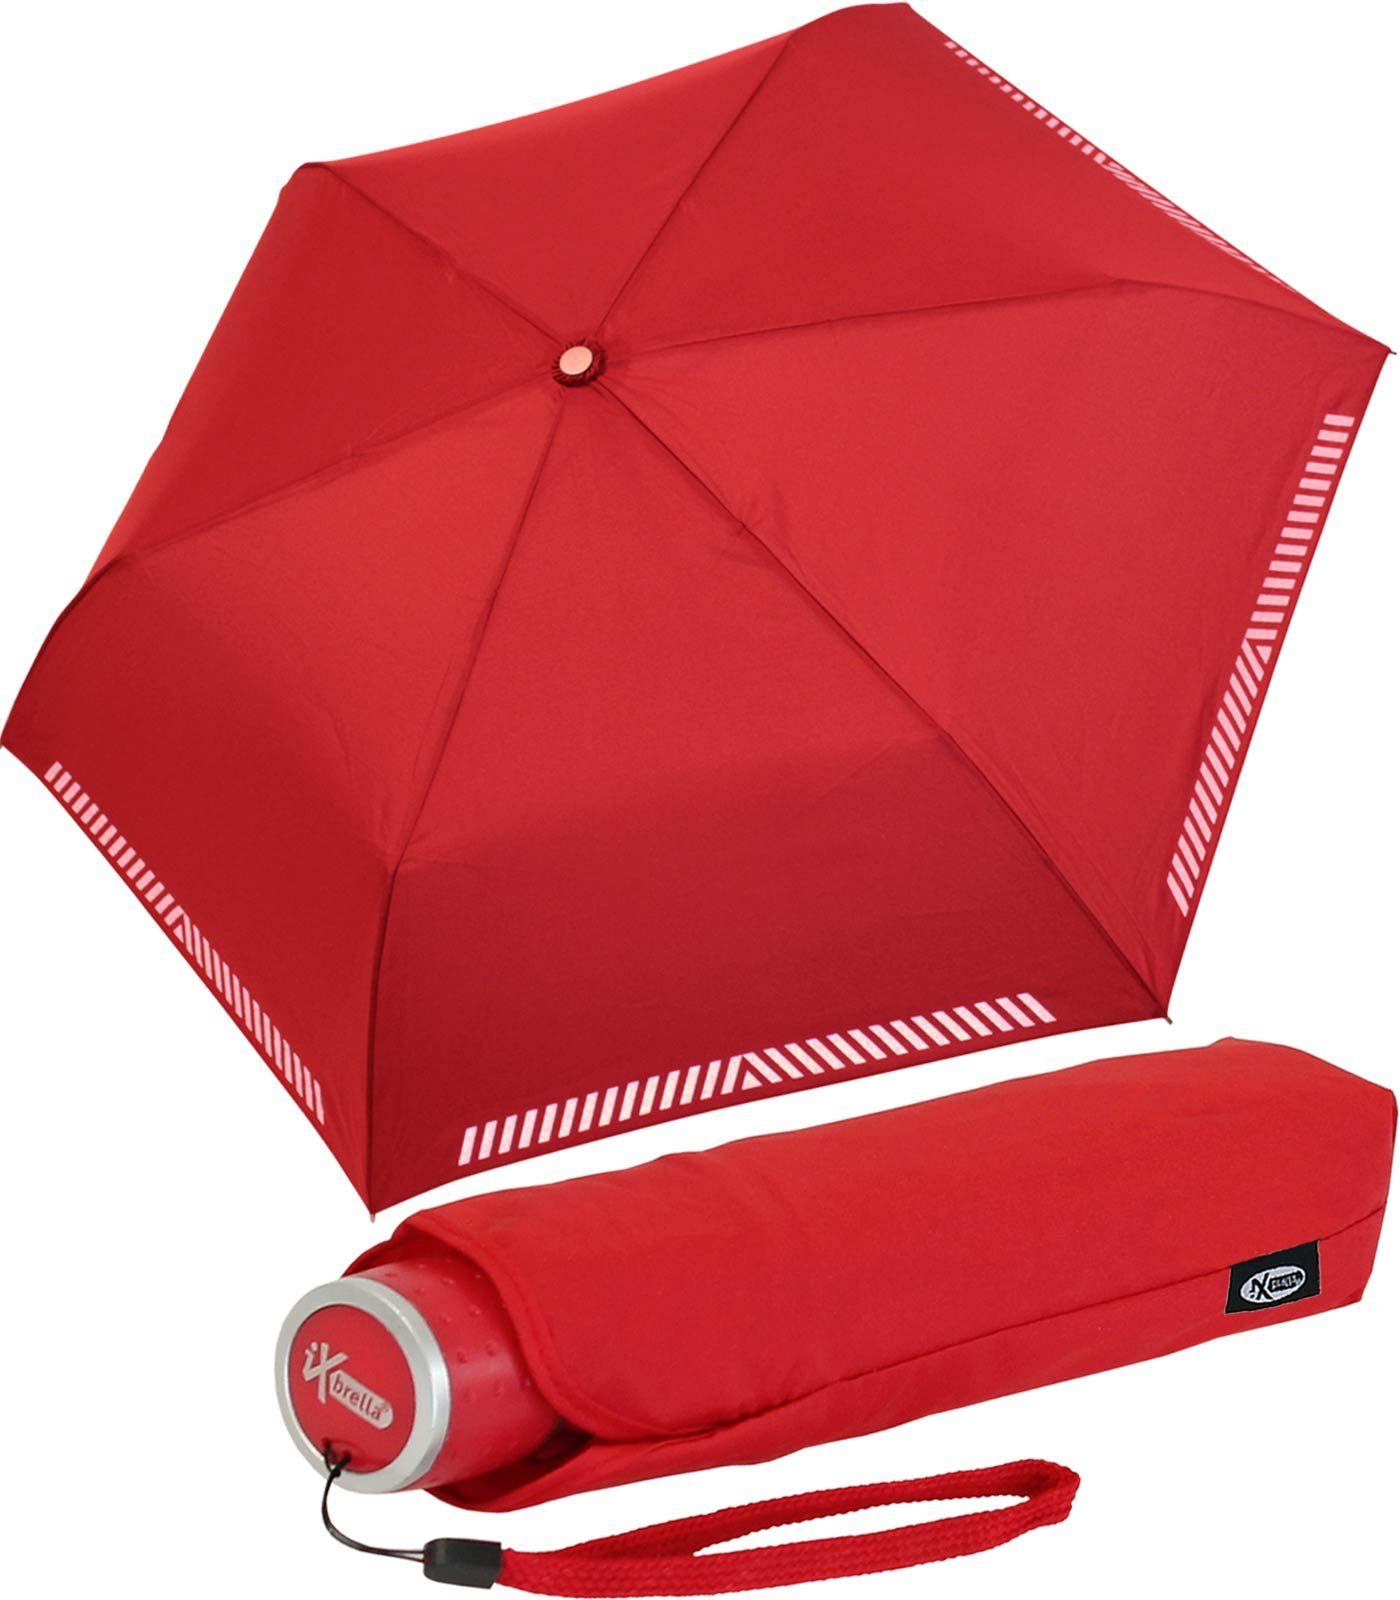 iX-brella Taschenregenschirm Mini Kinderschirm Safety Reflex extra leicht, reflektierend rot